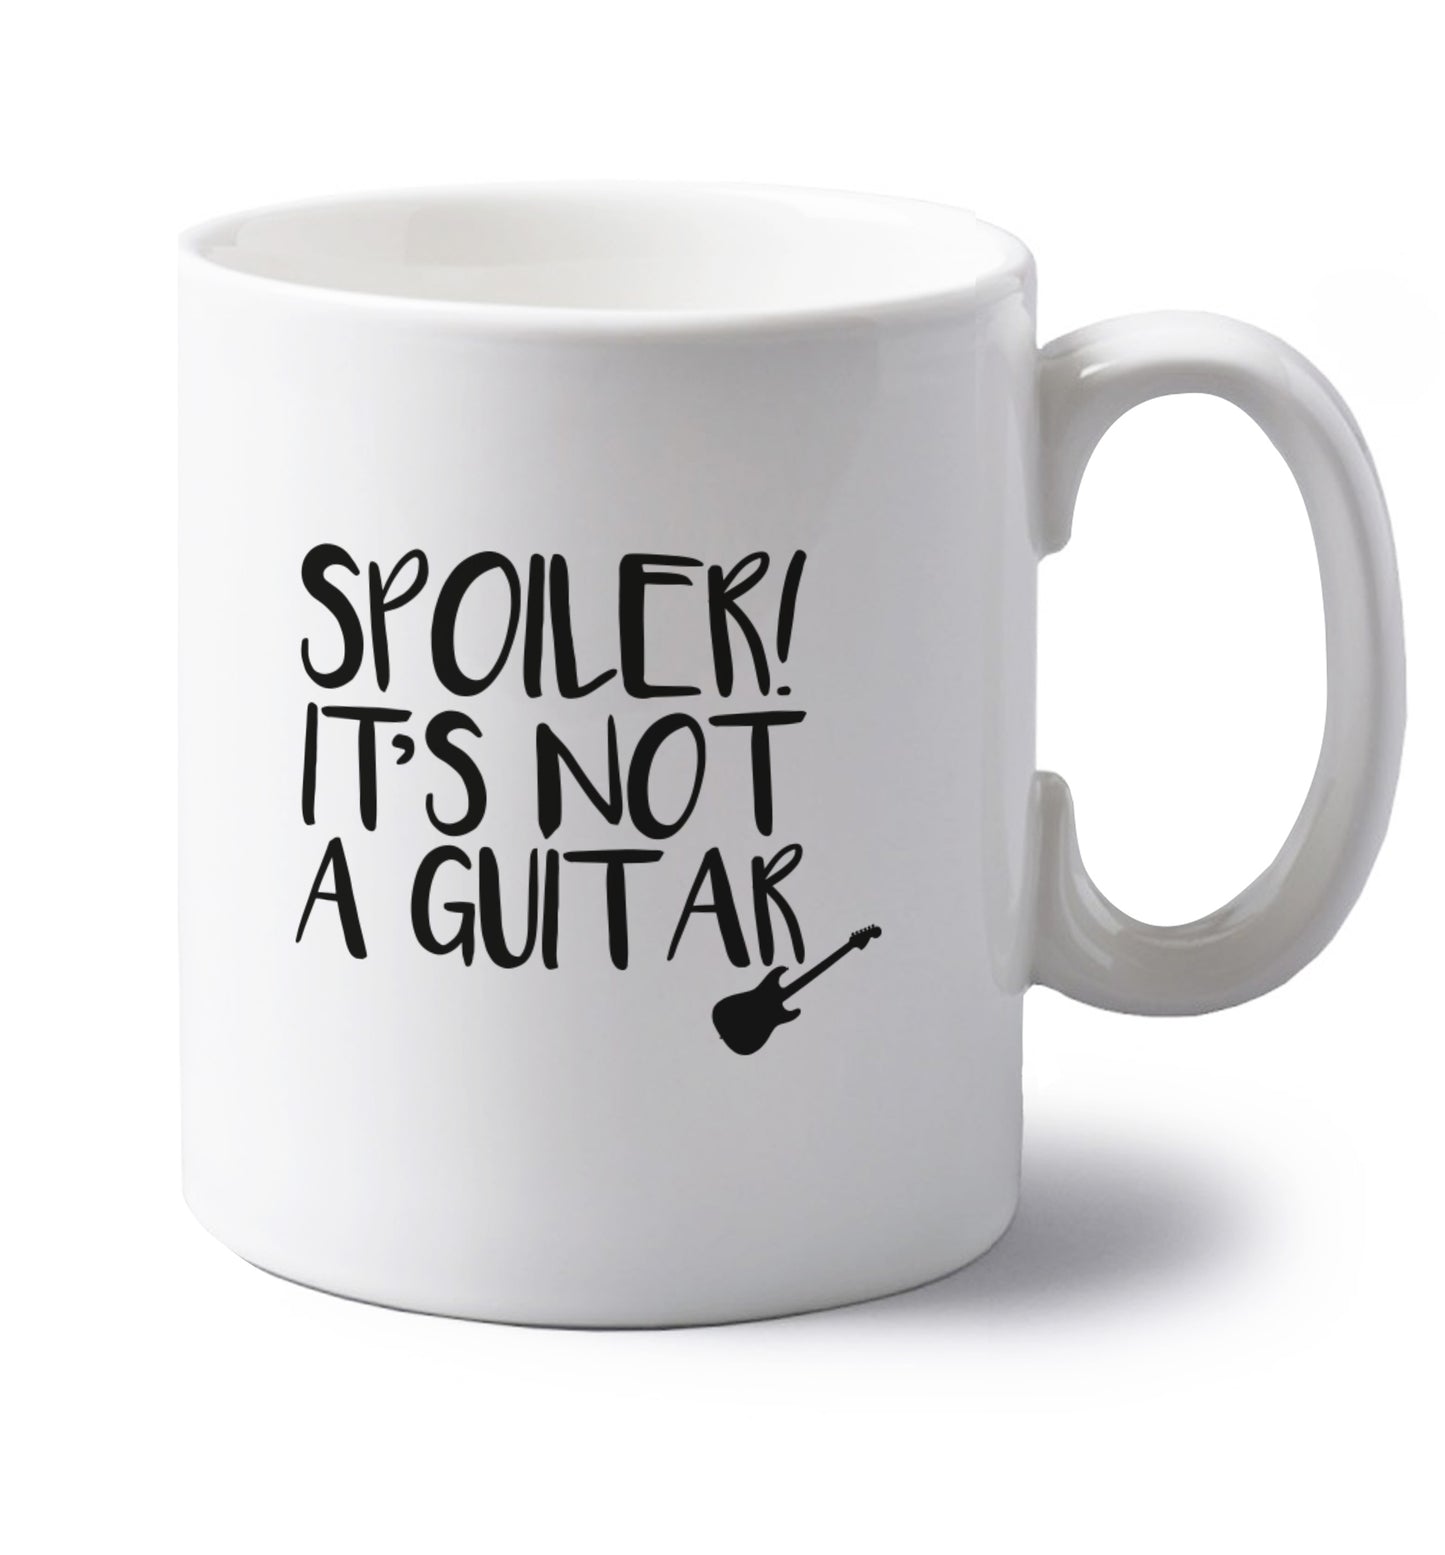 Spoiler it's not a guitar left handed white ceramic mug 